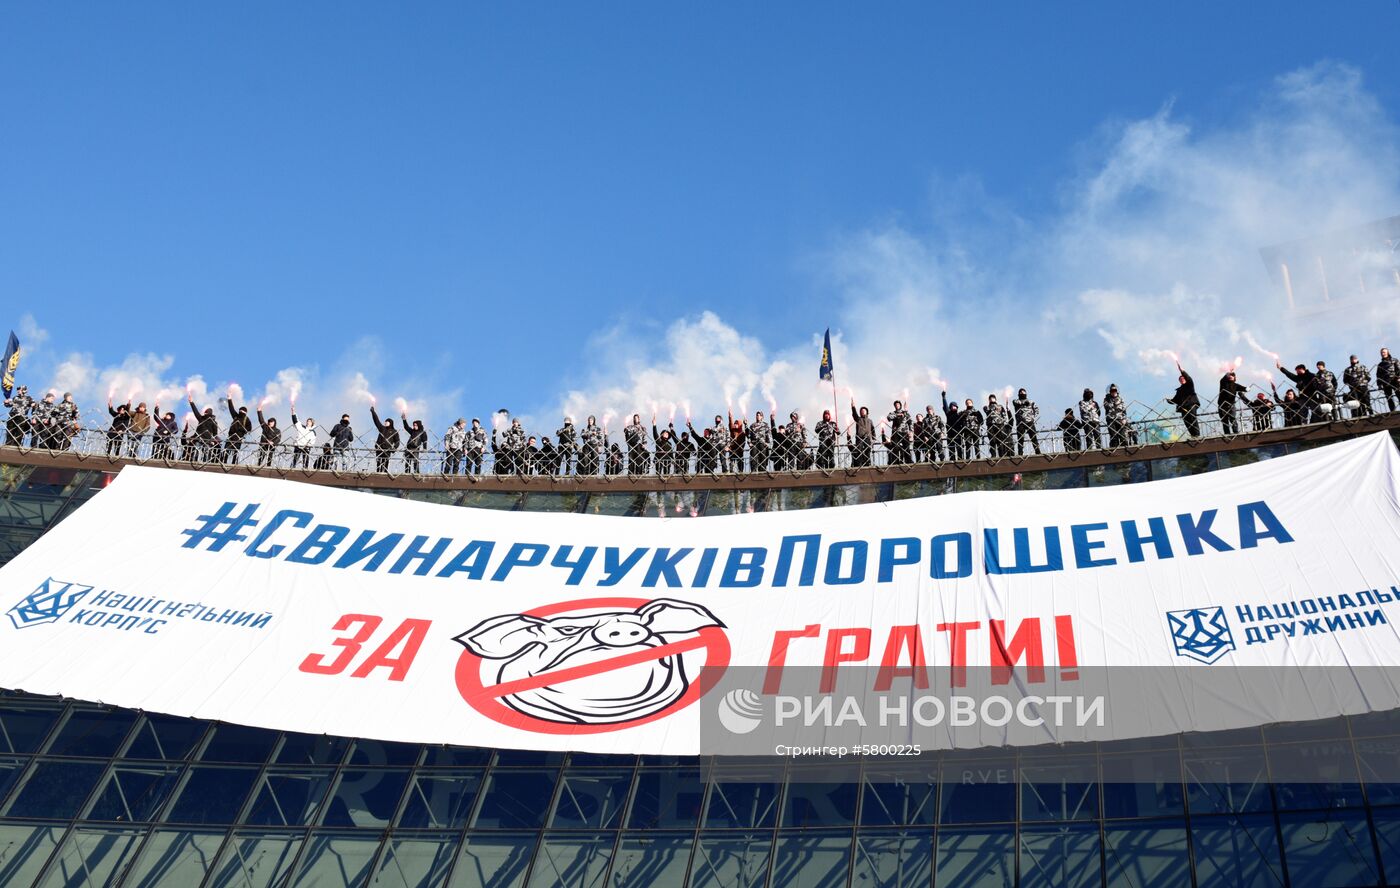 Акция против О. Свинарчука и П. Порошенко на Майдане